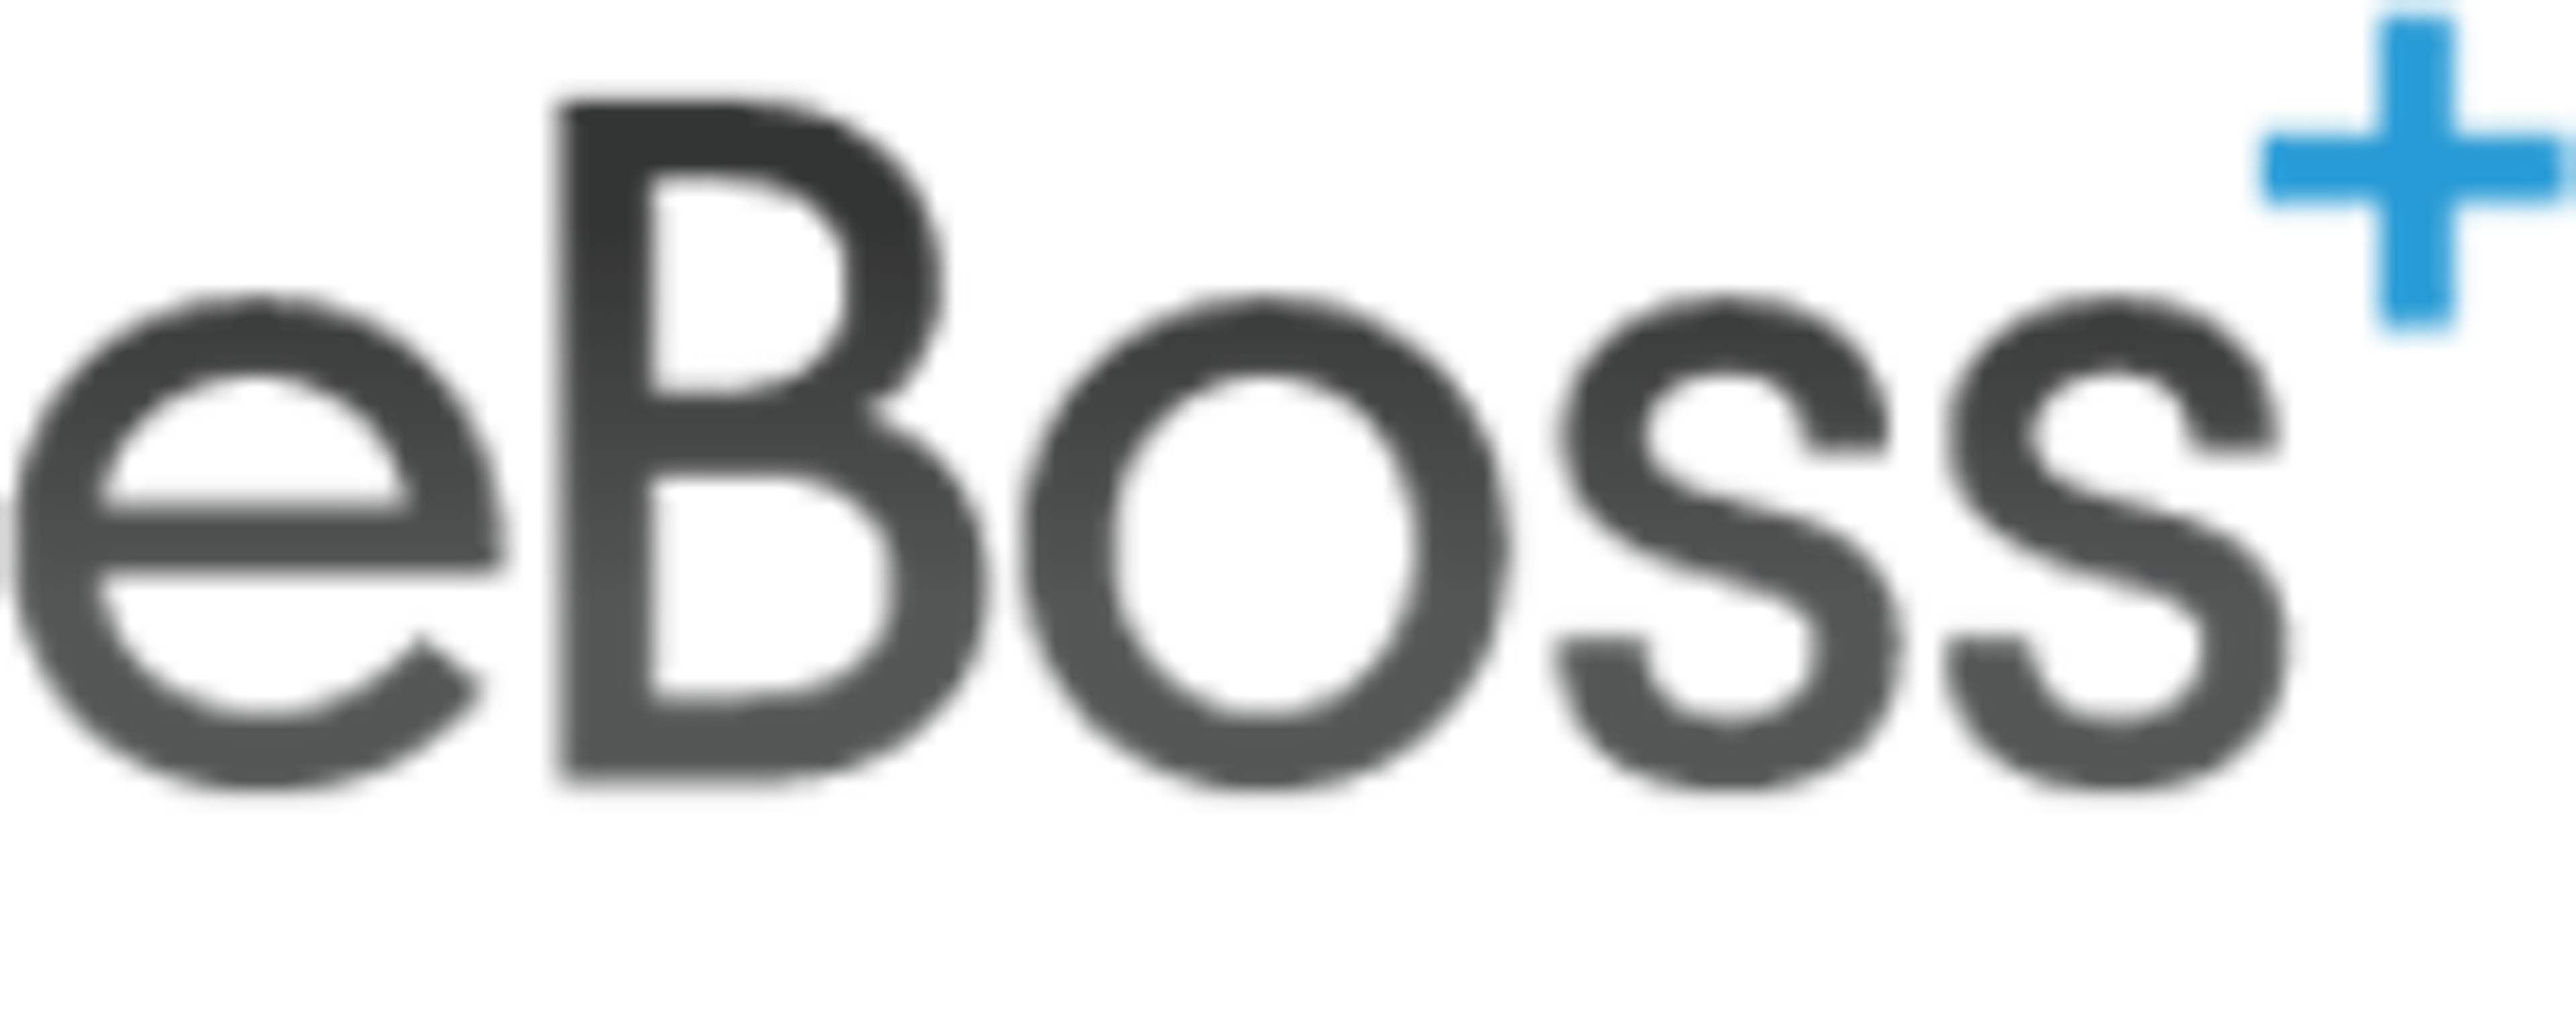 eBoss Recruitment Software Logo